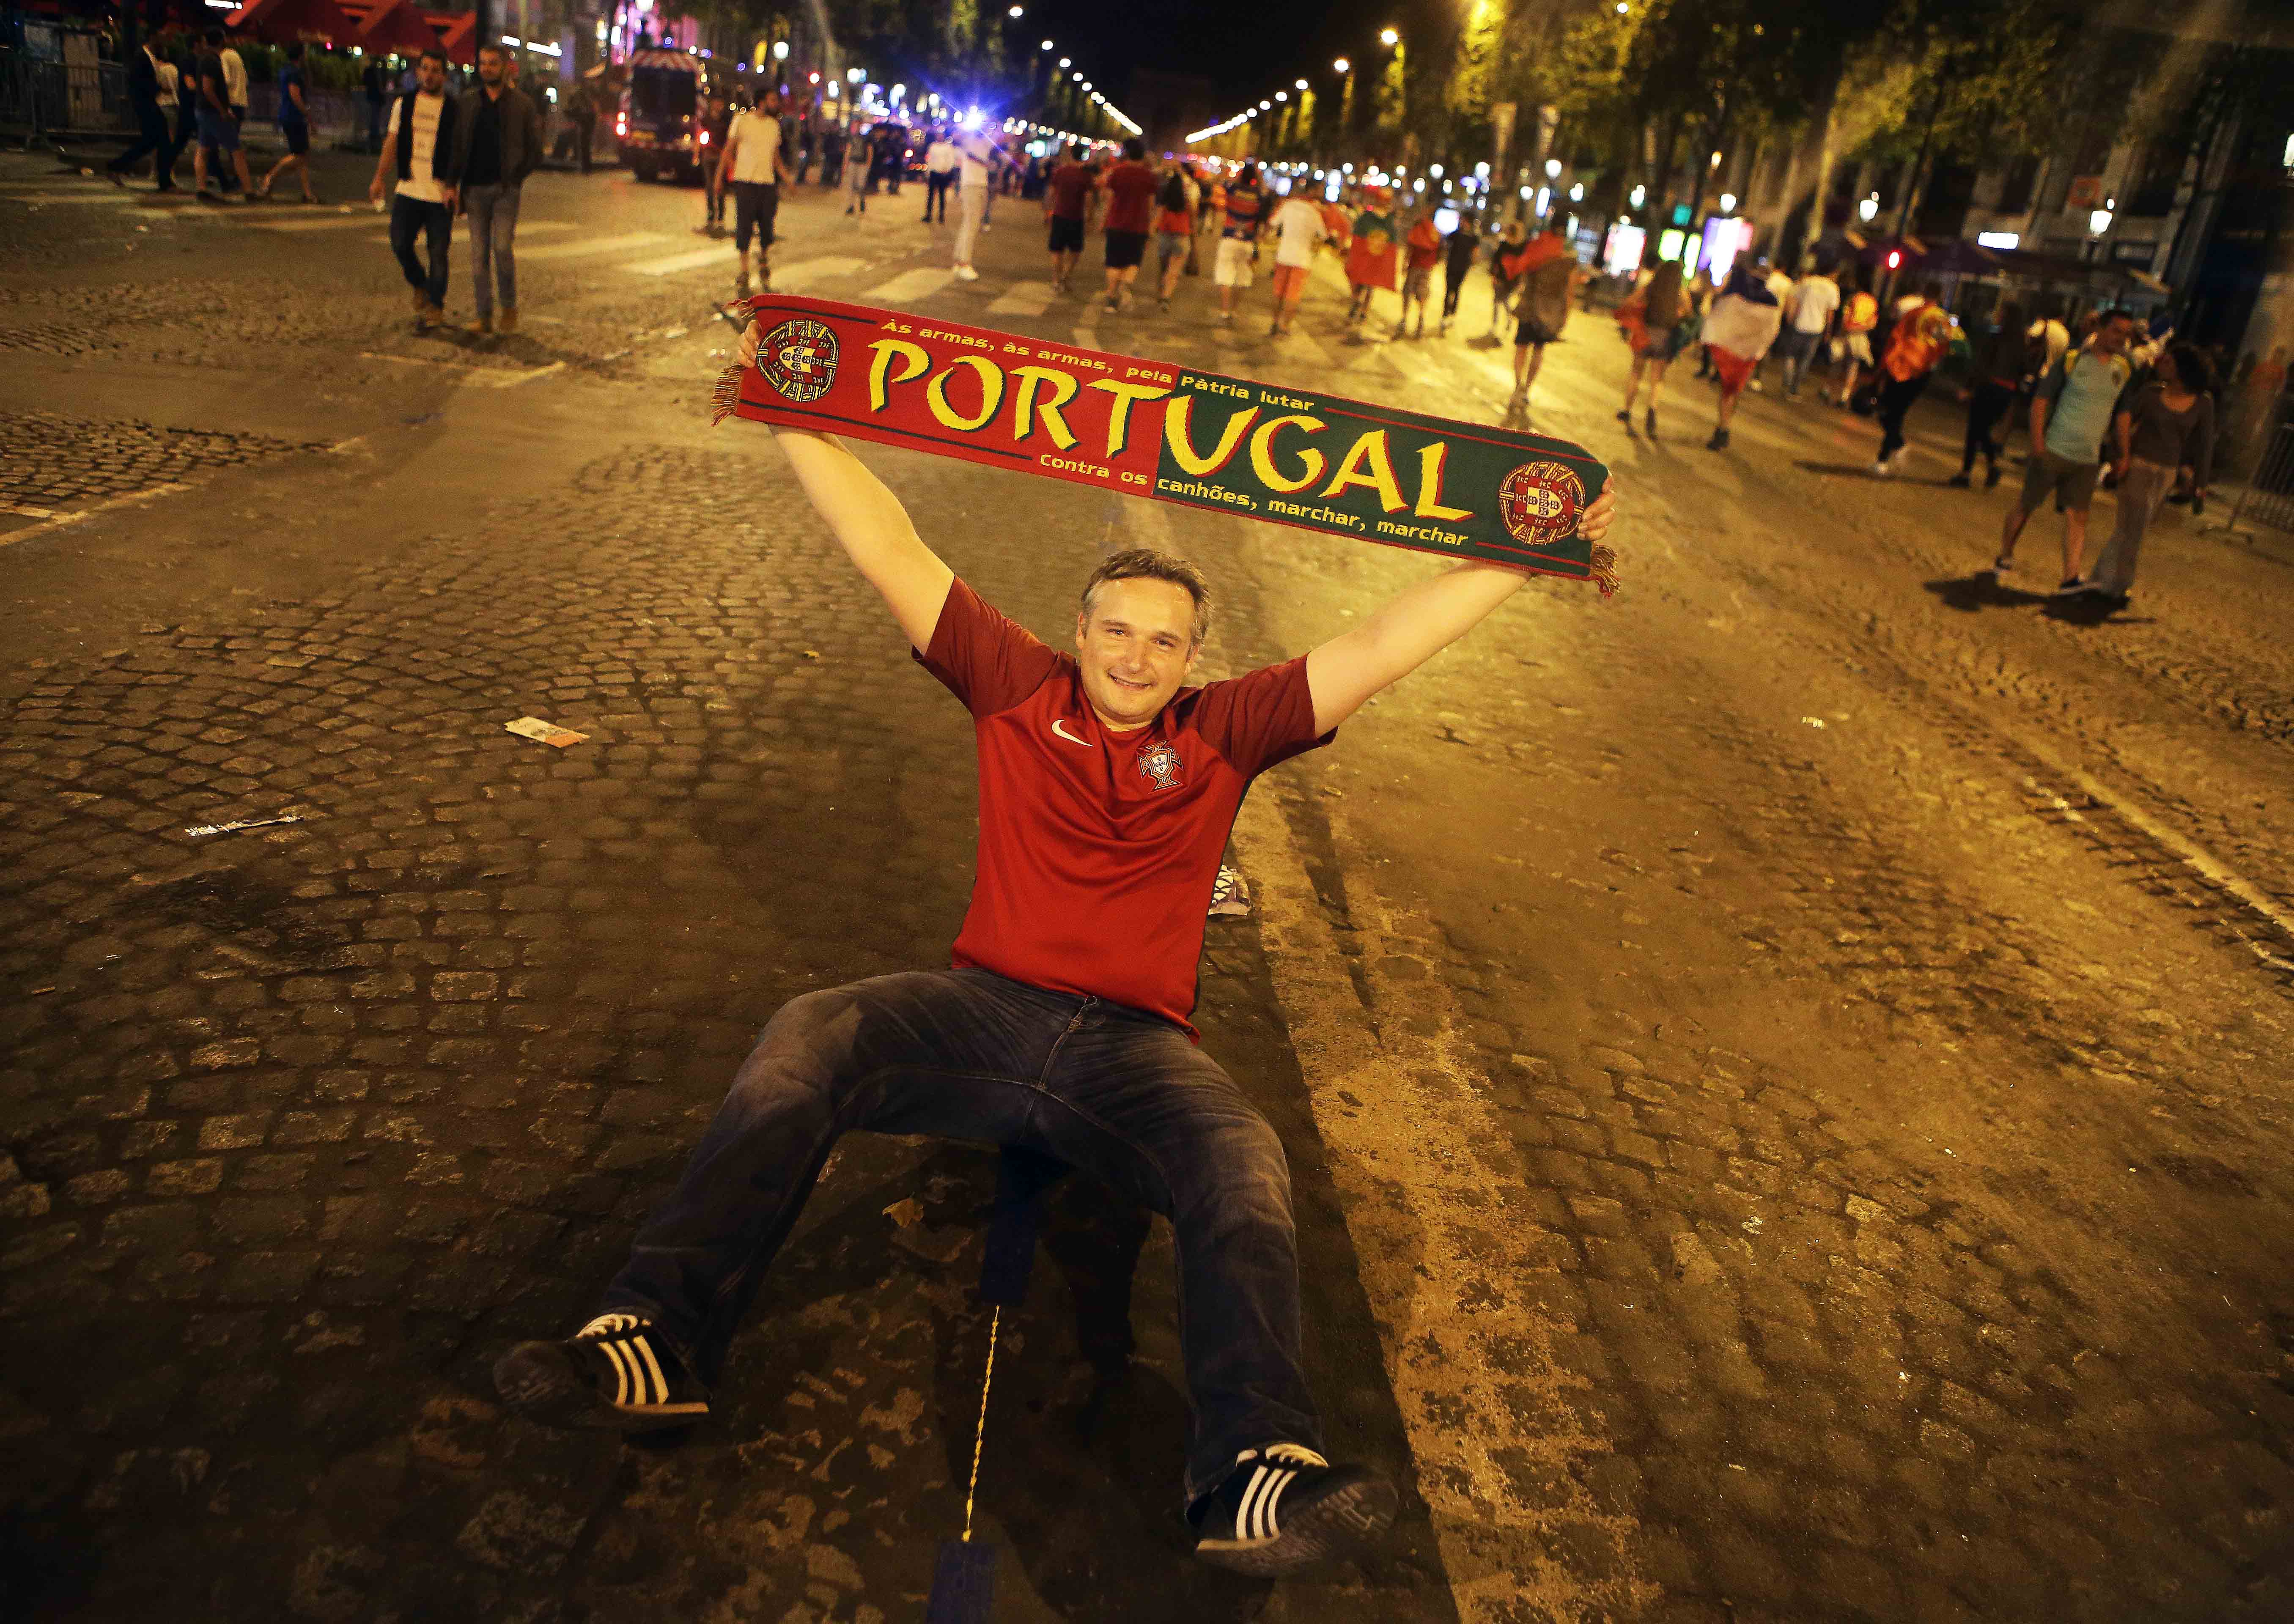 Aksi salah satu pendukung portugal saat merayakan keberhasilan negaranya menjadi Juara Piala Eropa di Prancis.